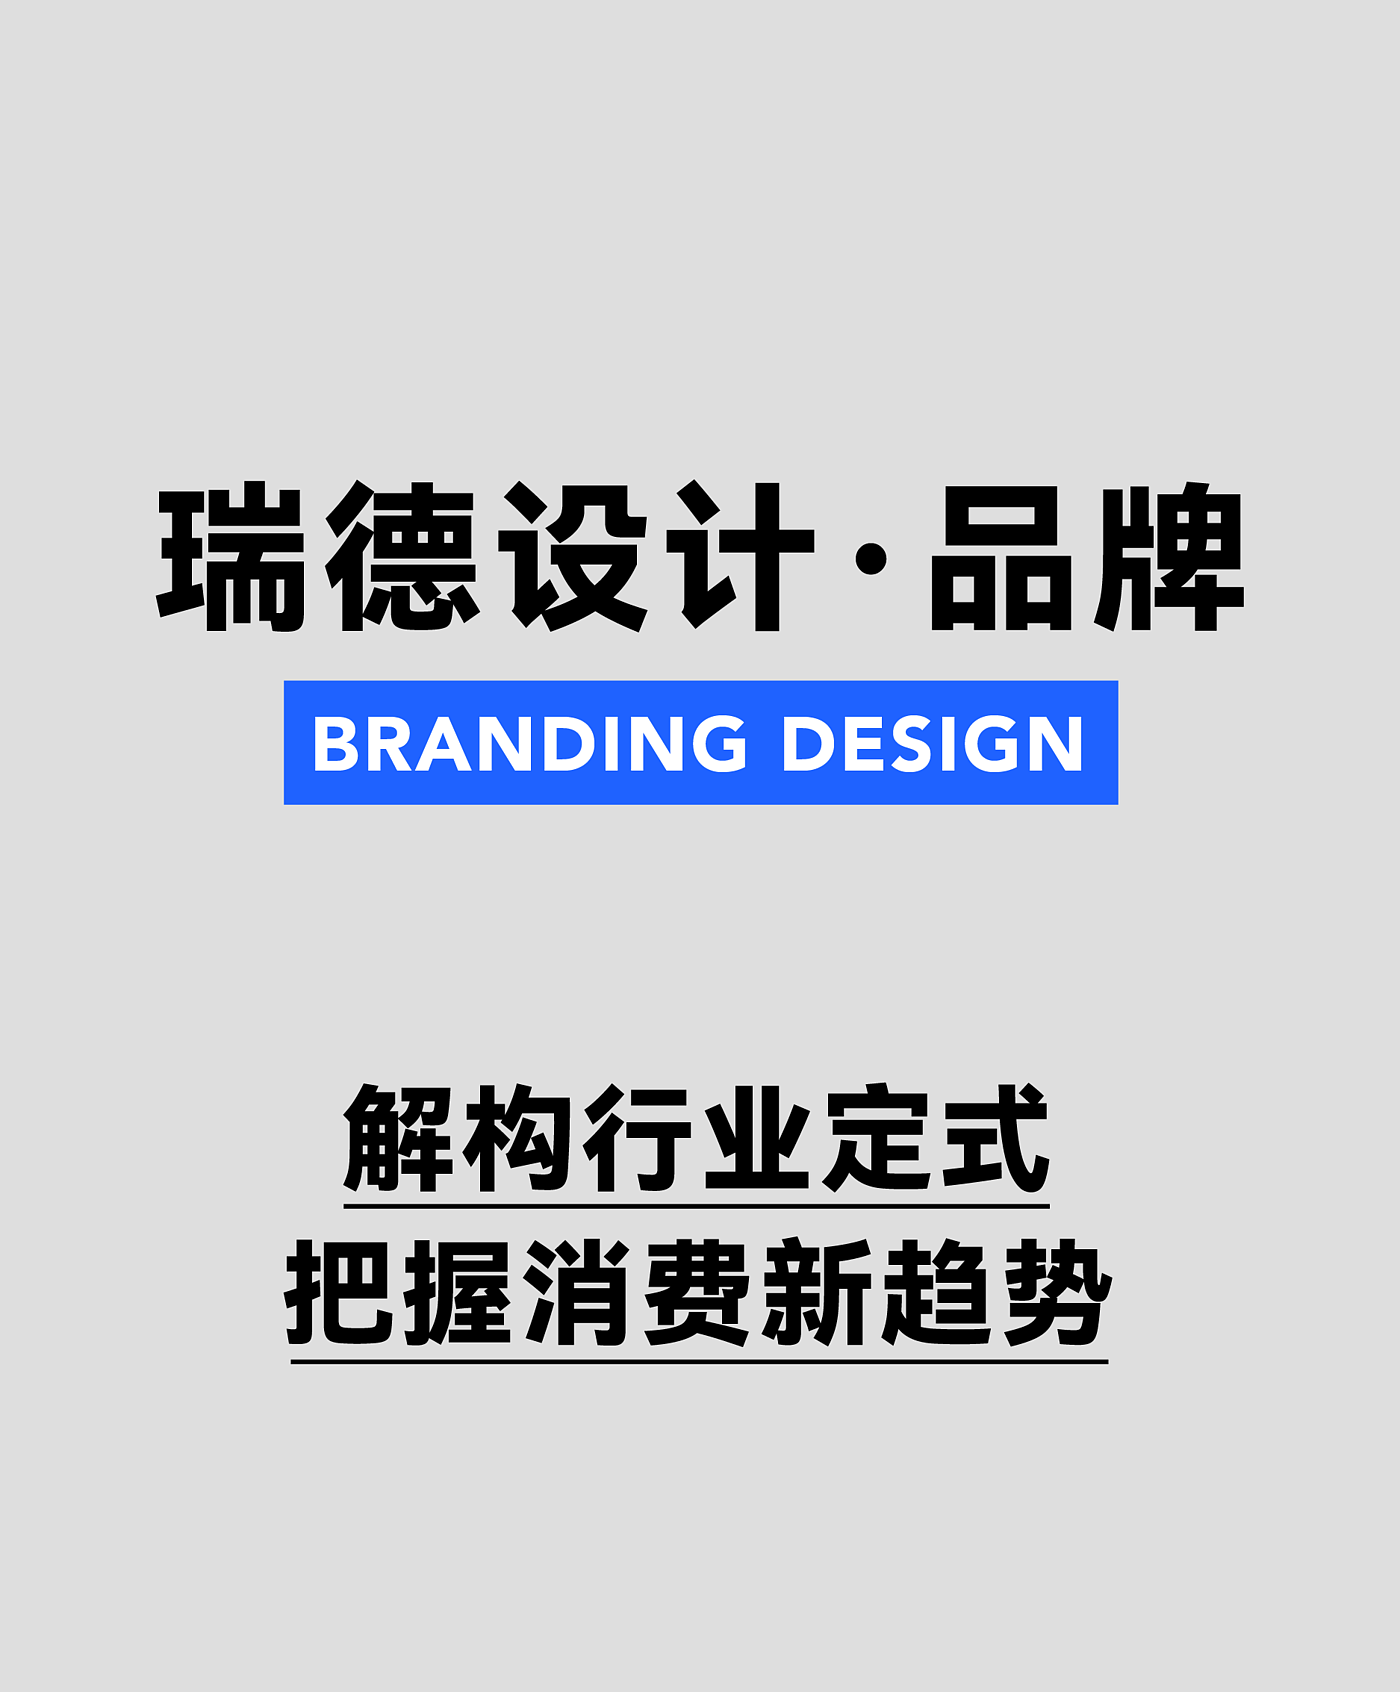 产品设计，瑞德设计，空间设计，工业设计，设计美学，品牌设计，